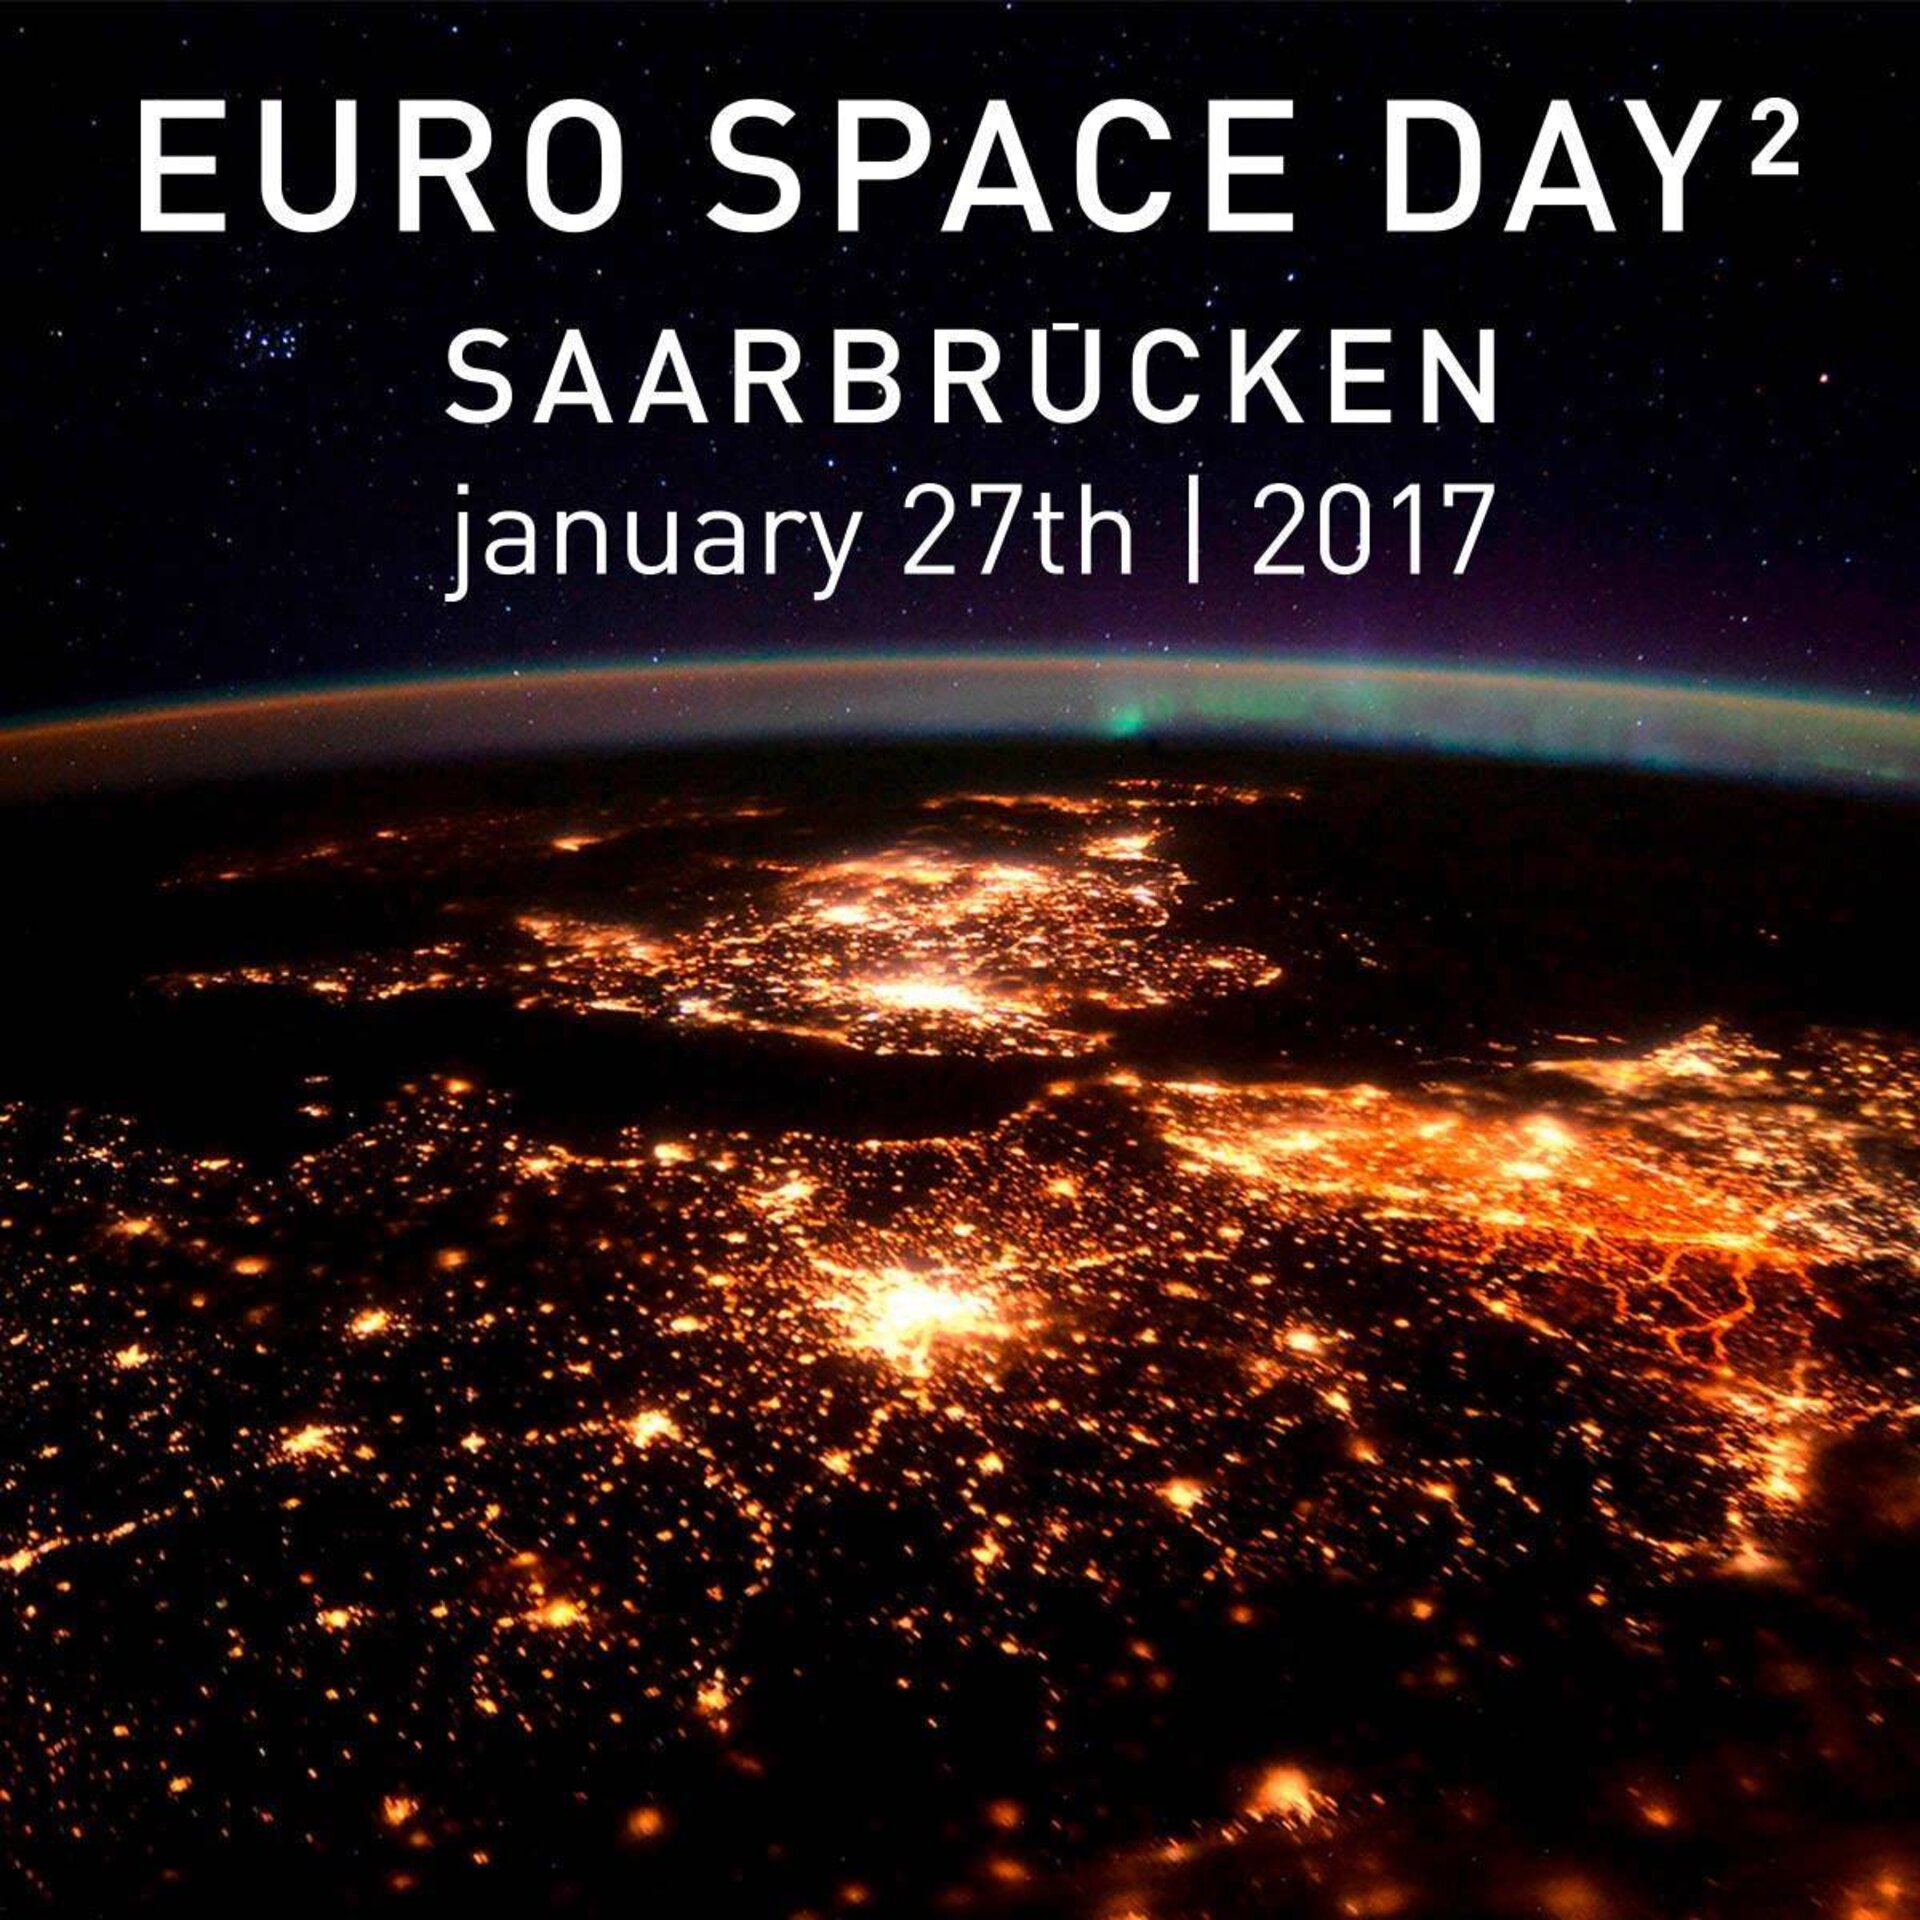 "De Sarrebruck à l’espace“ – En présence des astronautes Thomas Reiter et Jean-François Clervoy et d’autres experts de l’aérospatiale